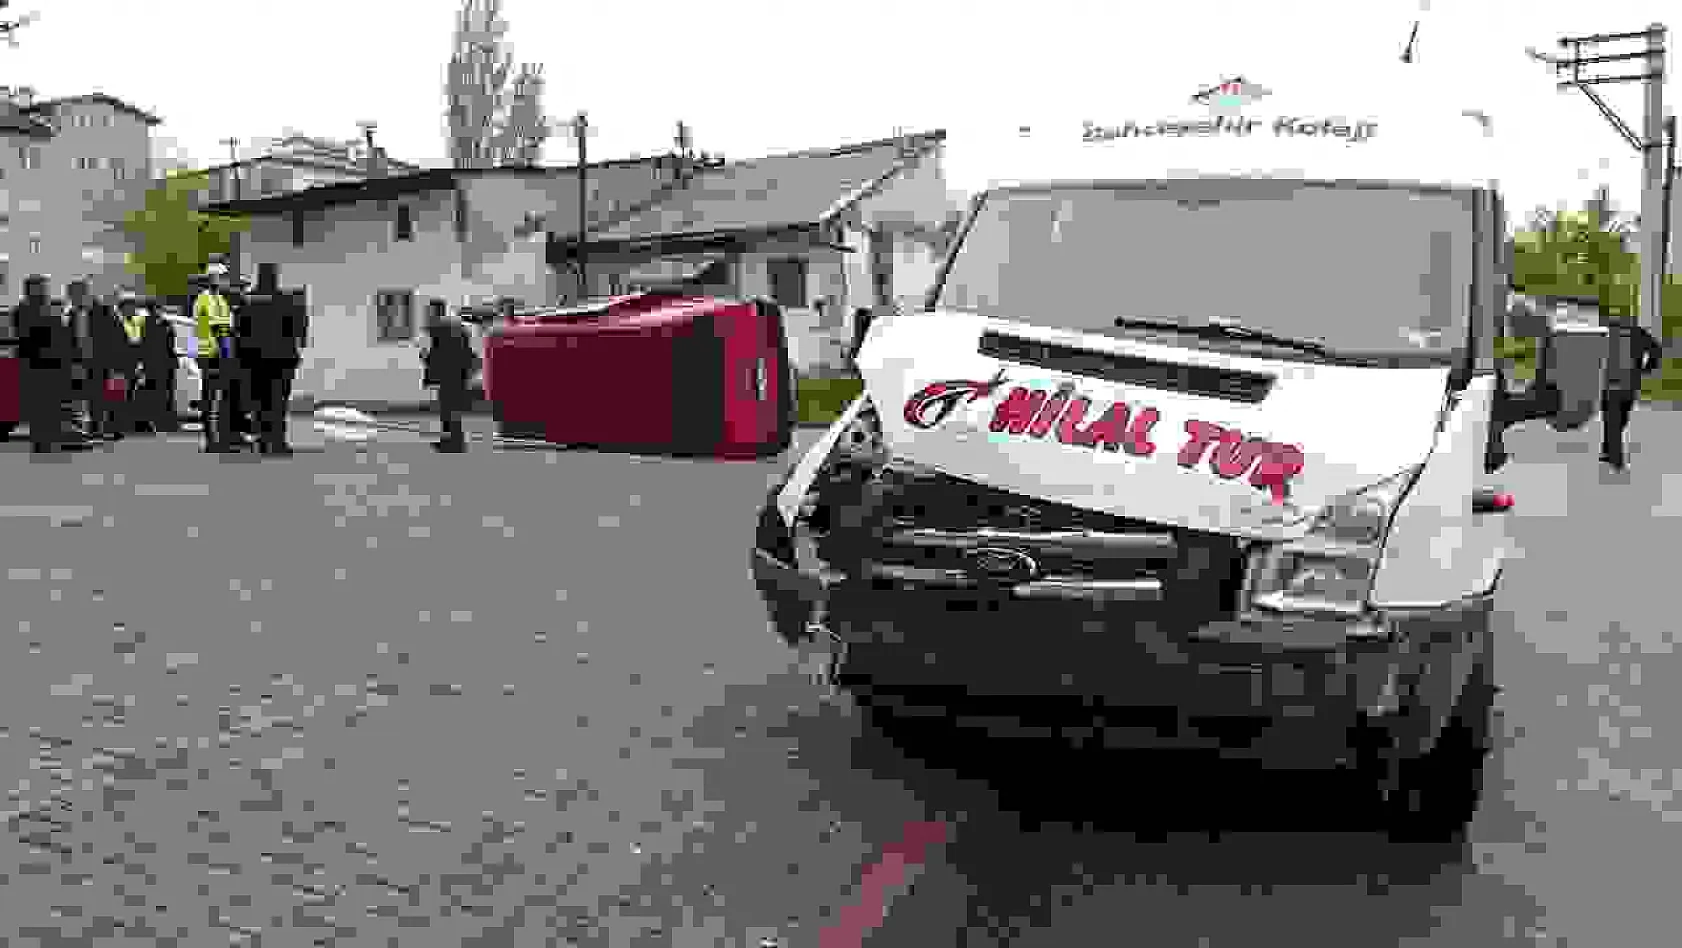 Servis aracı minibüse çarptı: 5 yaralı